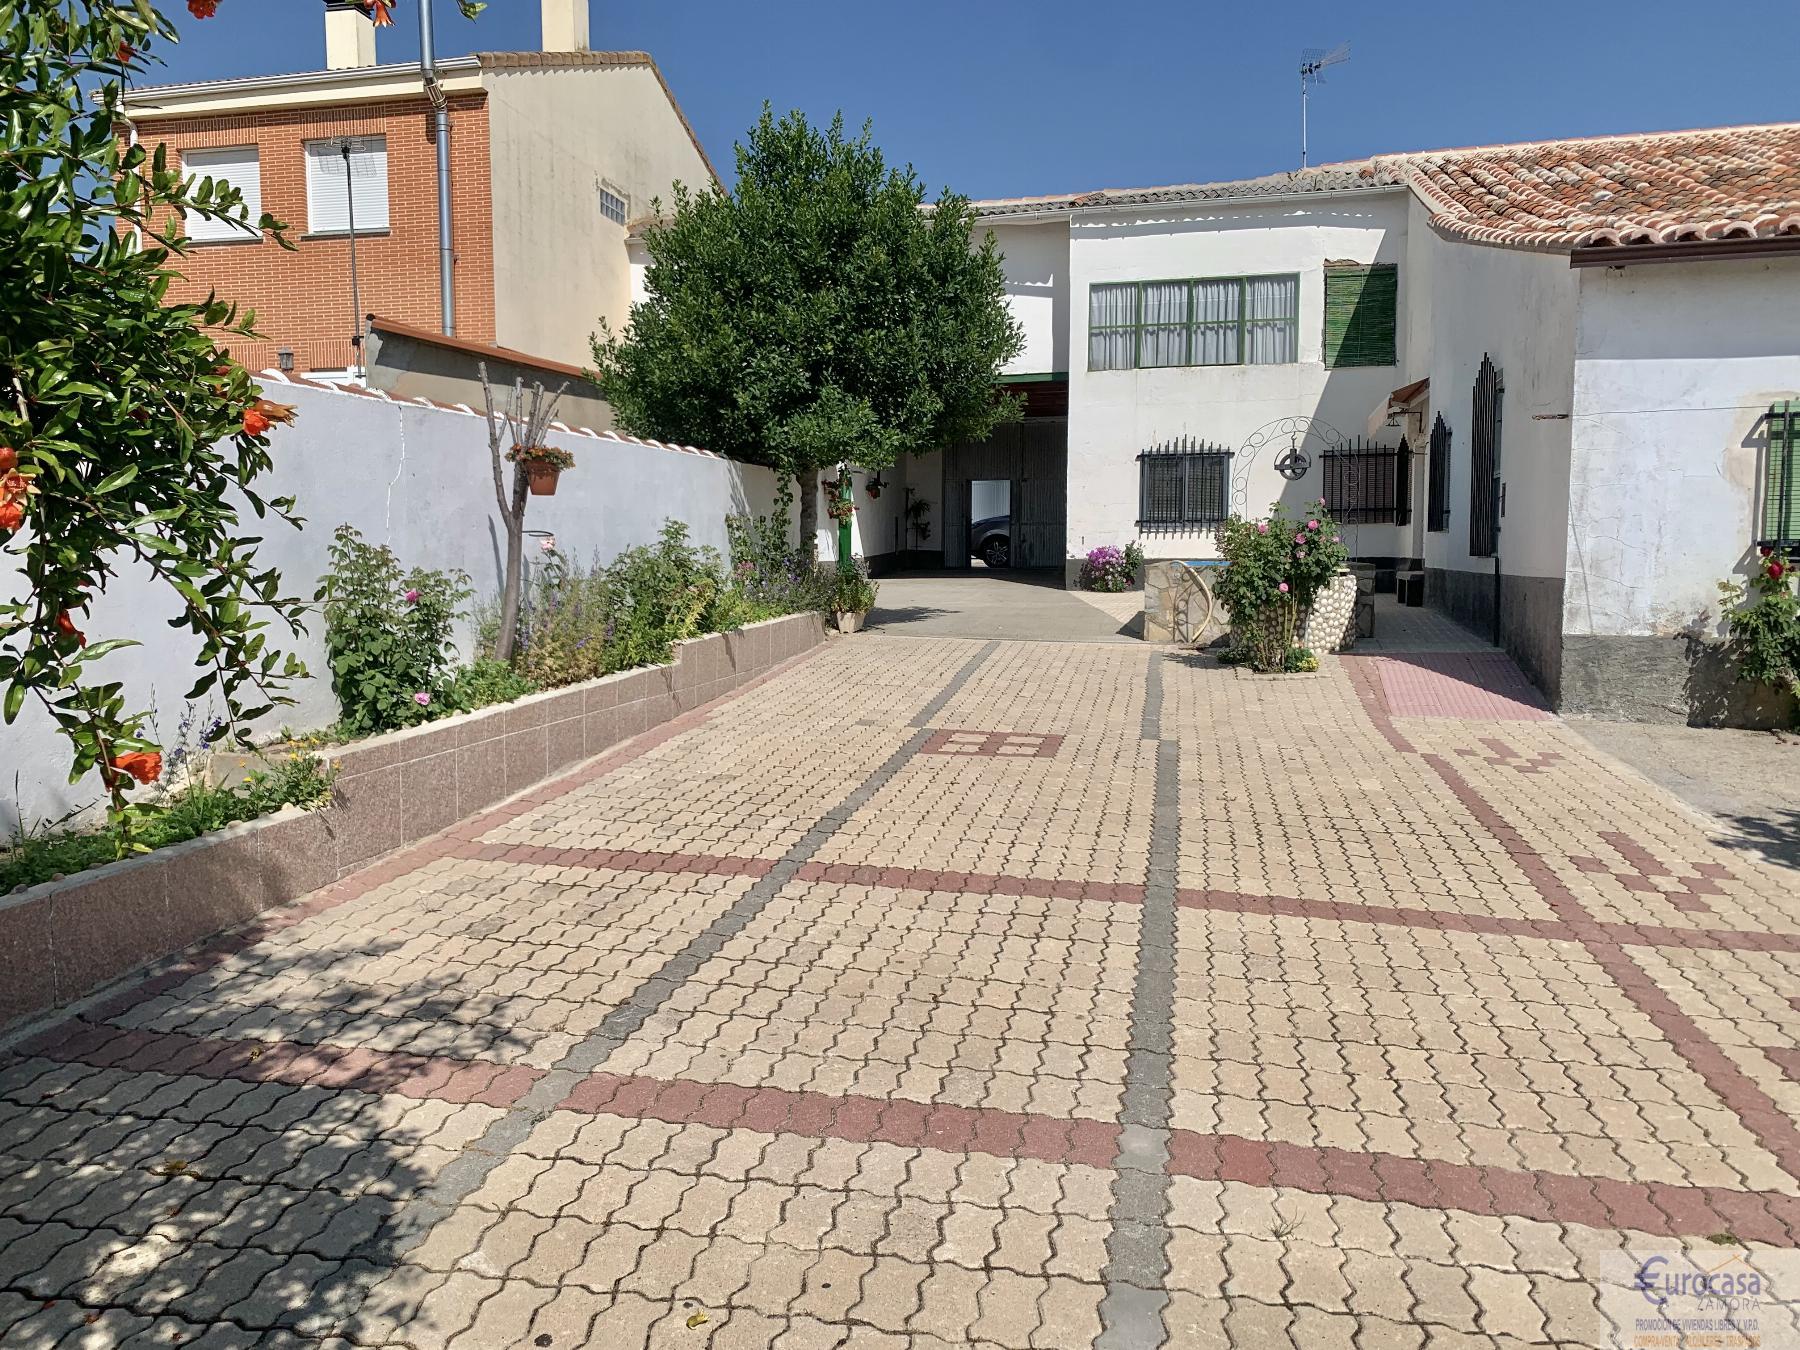 For sale of house in Morales del Vino